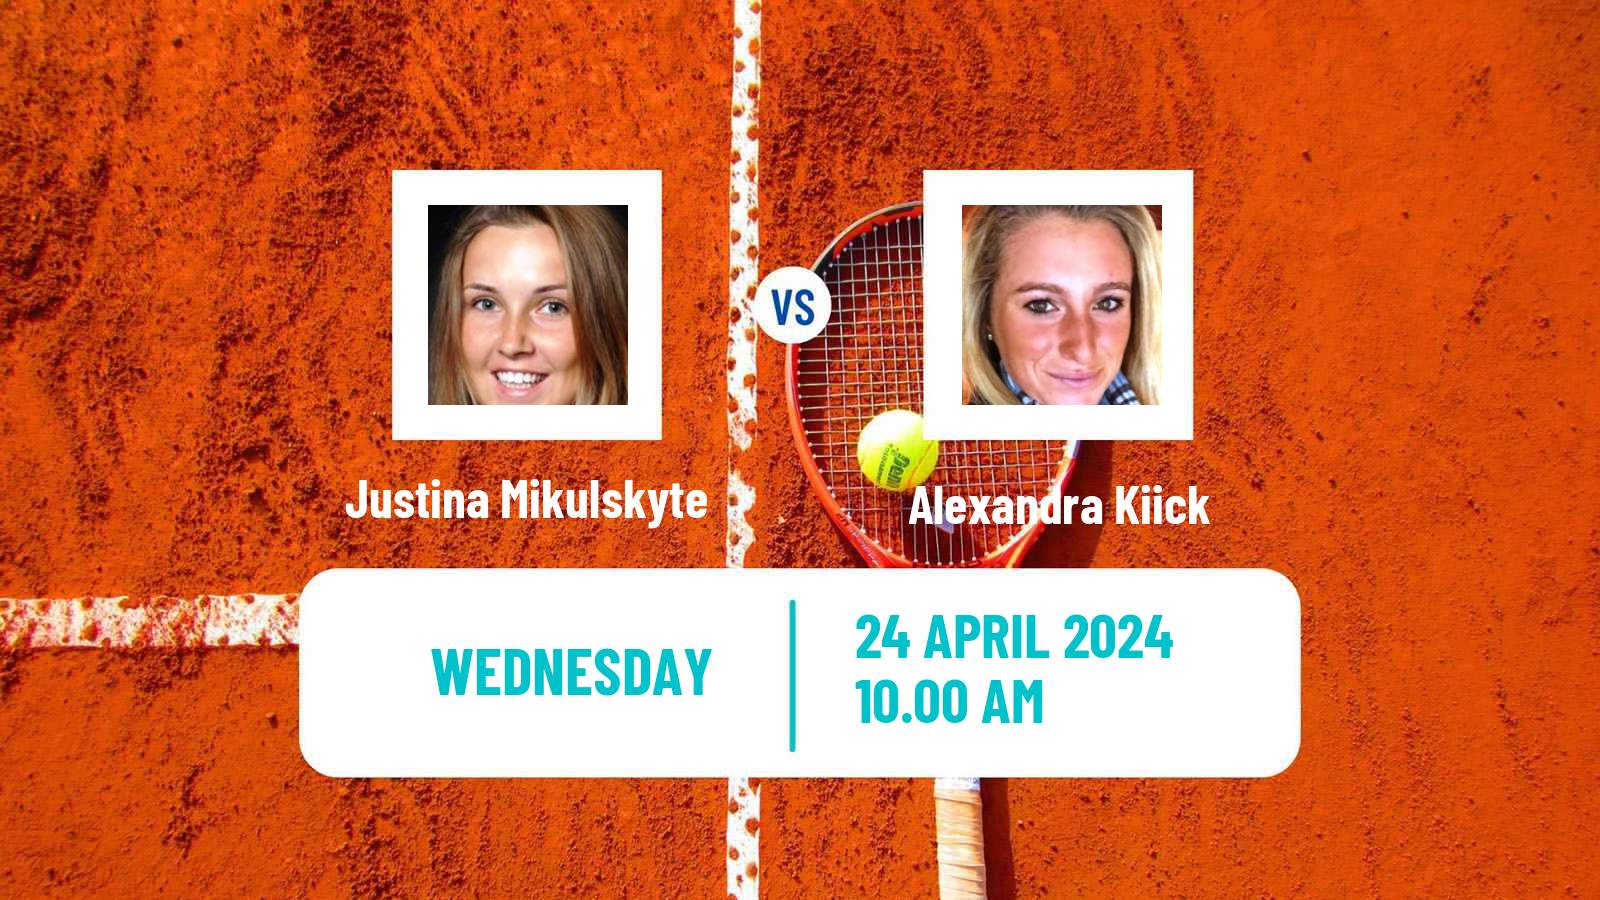 Tennis ITF W75 Charlottesville Va Women Justina Mikulskyte - Alexandra Kiick